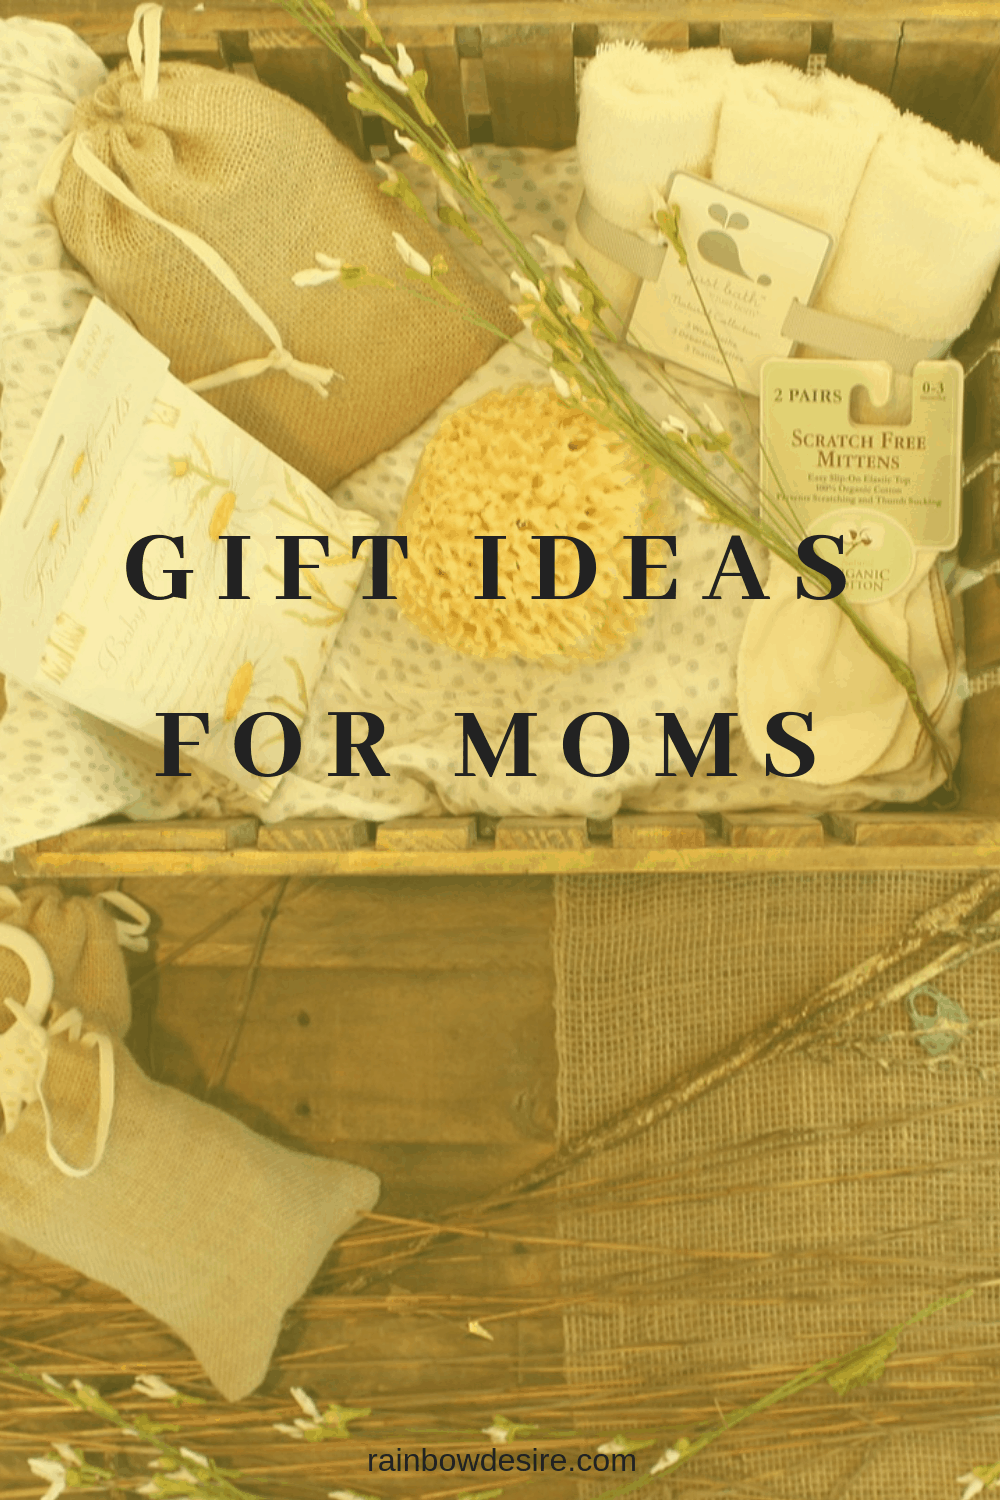 Gift ideas for moms